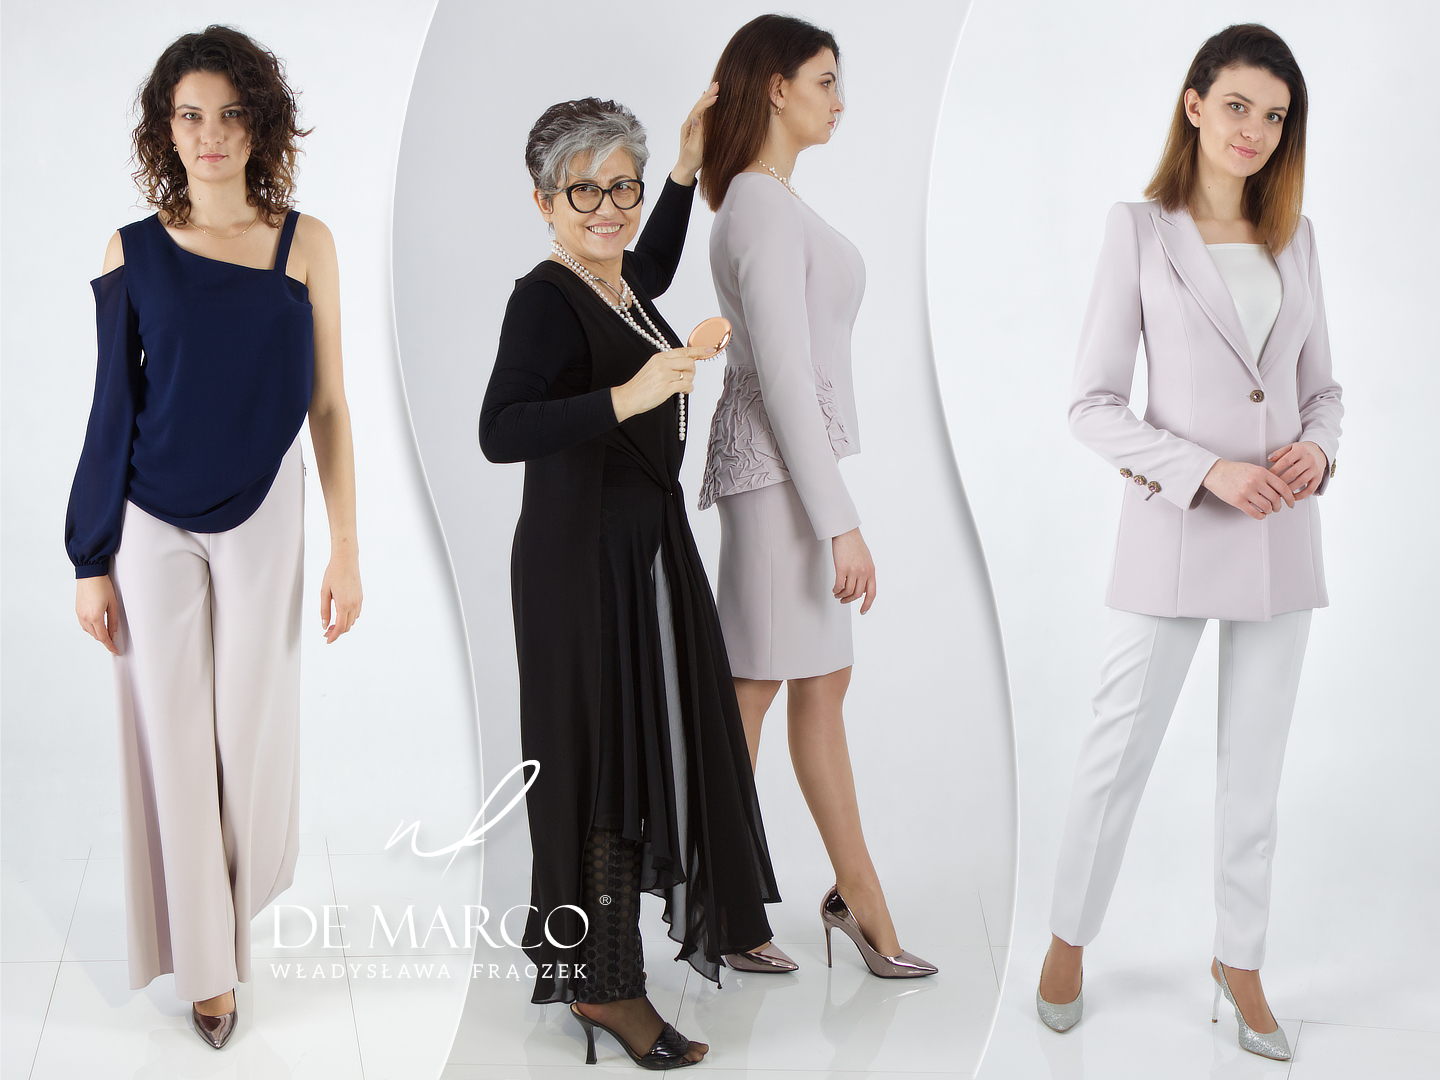 Polnische exklusive Damenbekleidung De Marco Luxus-Maßbekleidung online